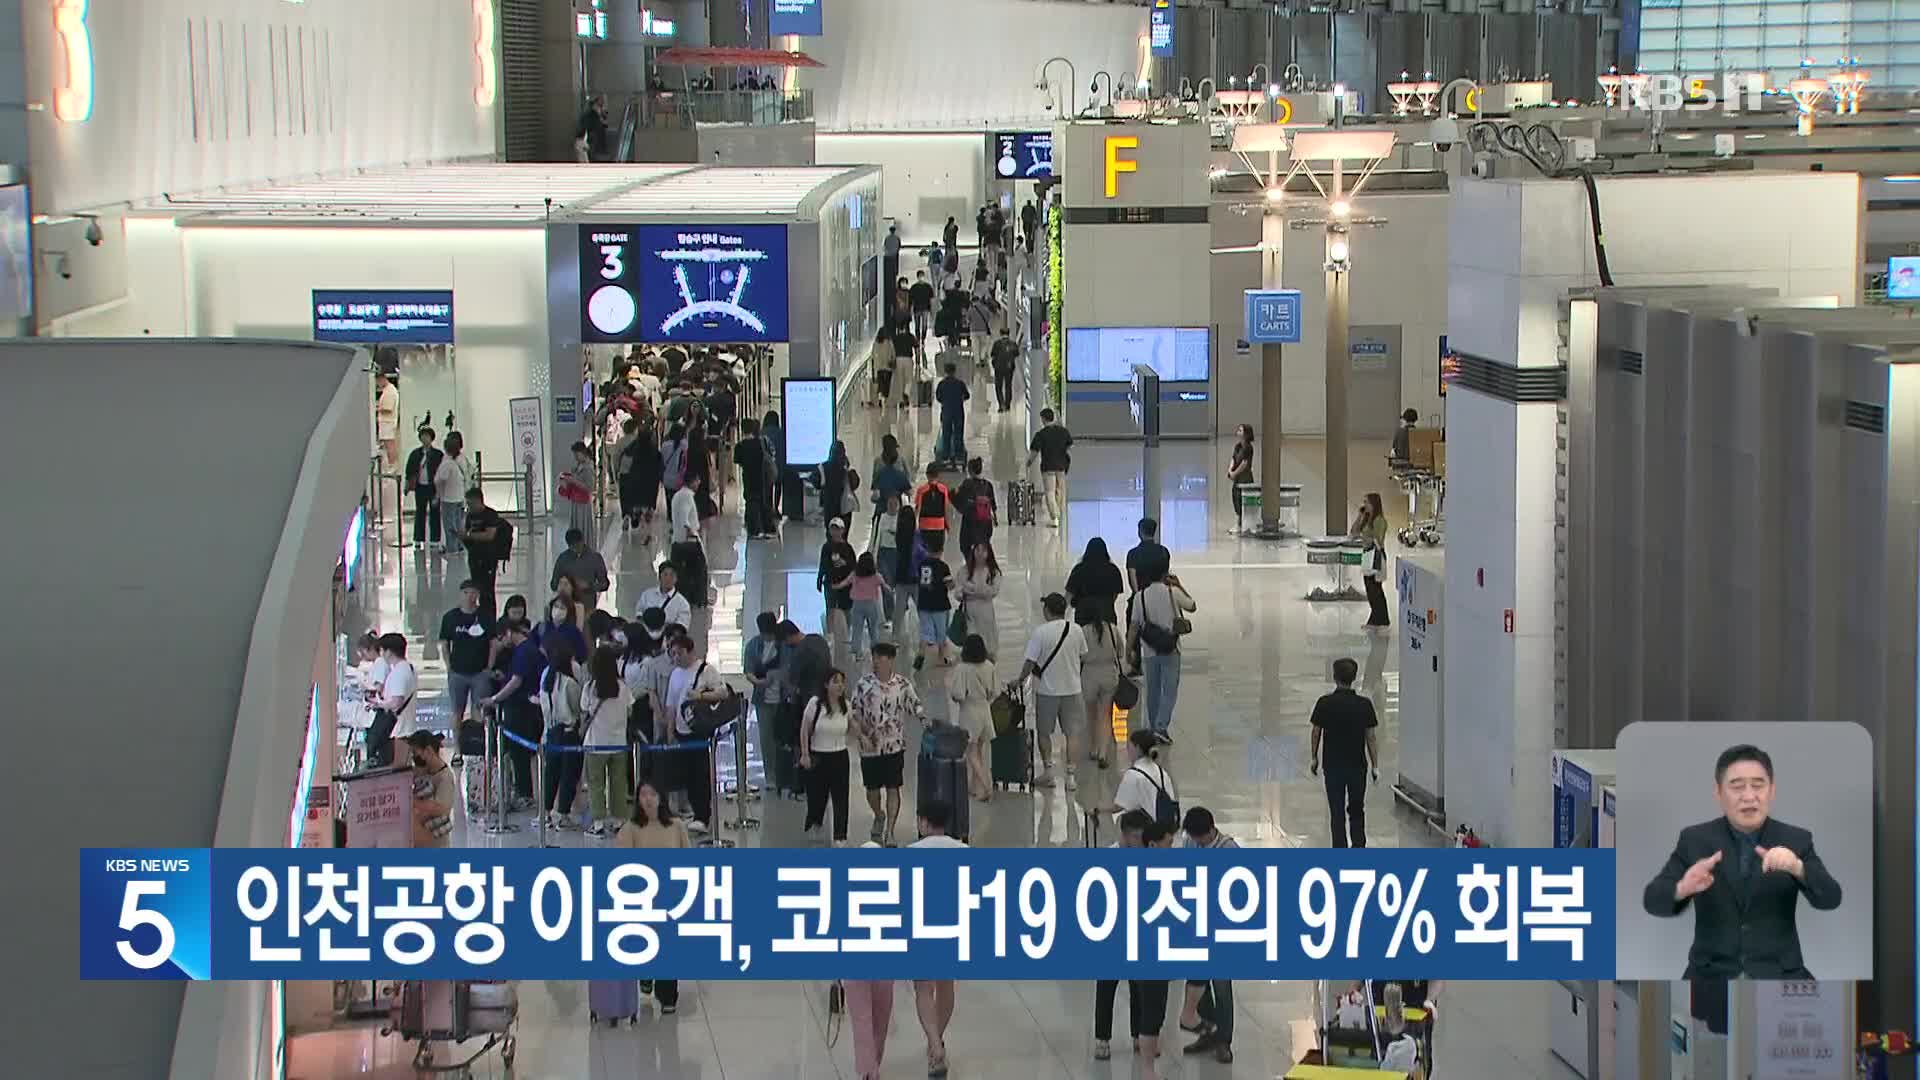 인천공항 이용객, 코로나19 이전의 97% 회복